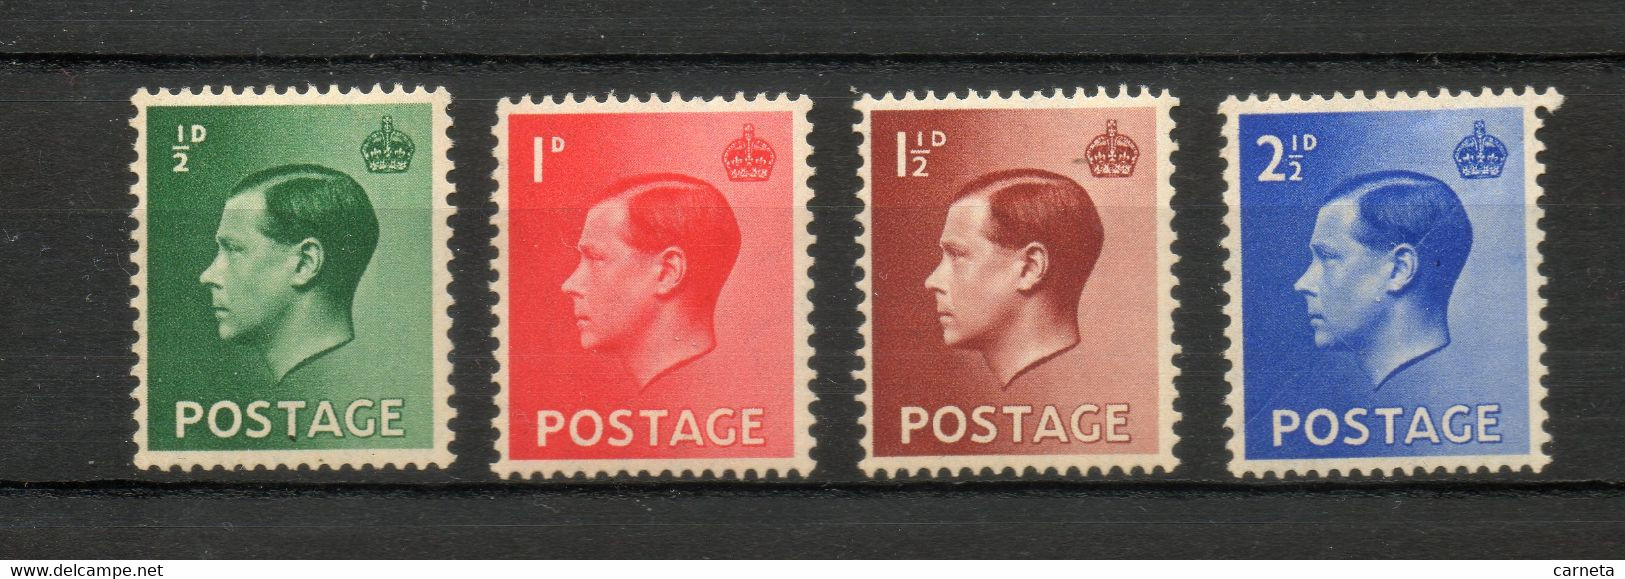 GRANDE BRETAGNE  N° 205 à 208   NEUFS AVEC CHARNIERES  COTE  1.75€   EDOUARD VIII  ROI  VOIR DESCRIPTION - Unused Stamps